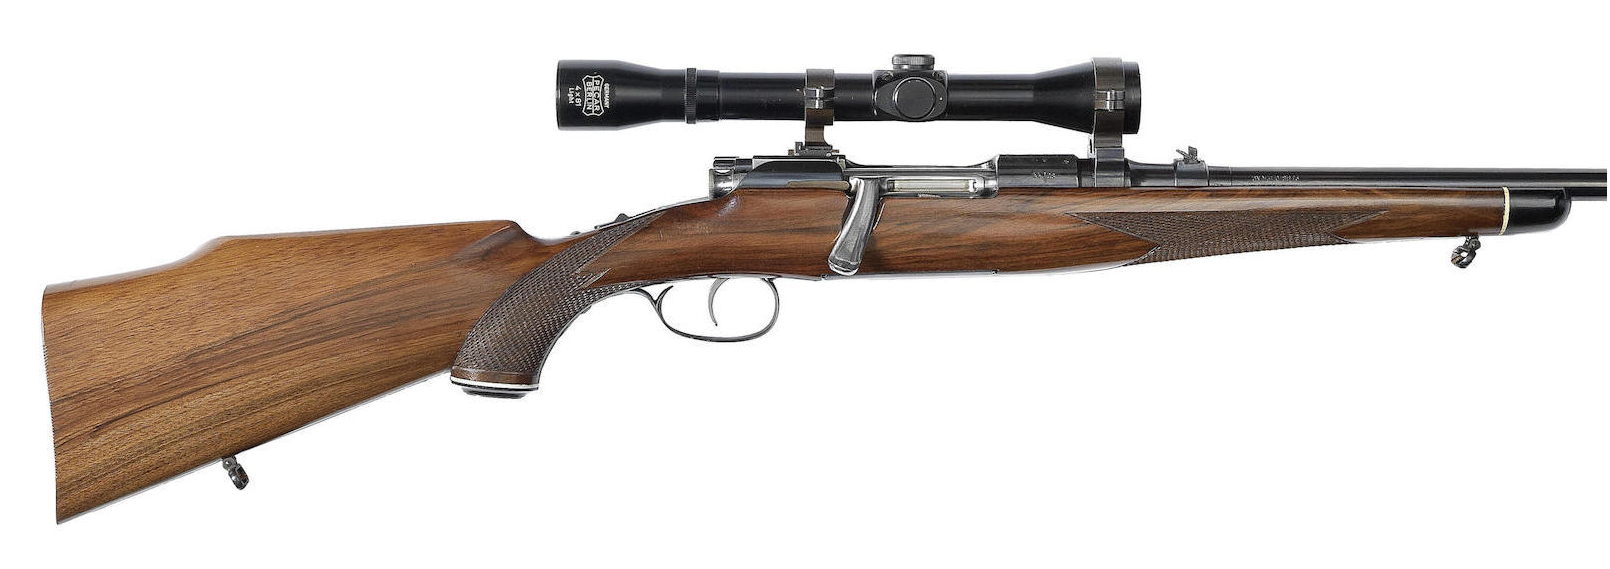 Mannlicher-Schönauer Rifles for Sale-1-MCA-270win